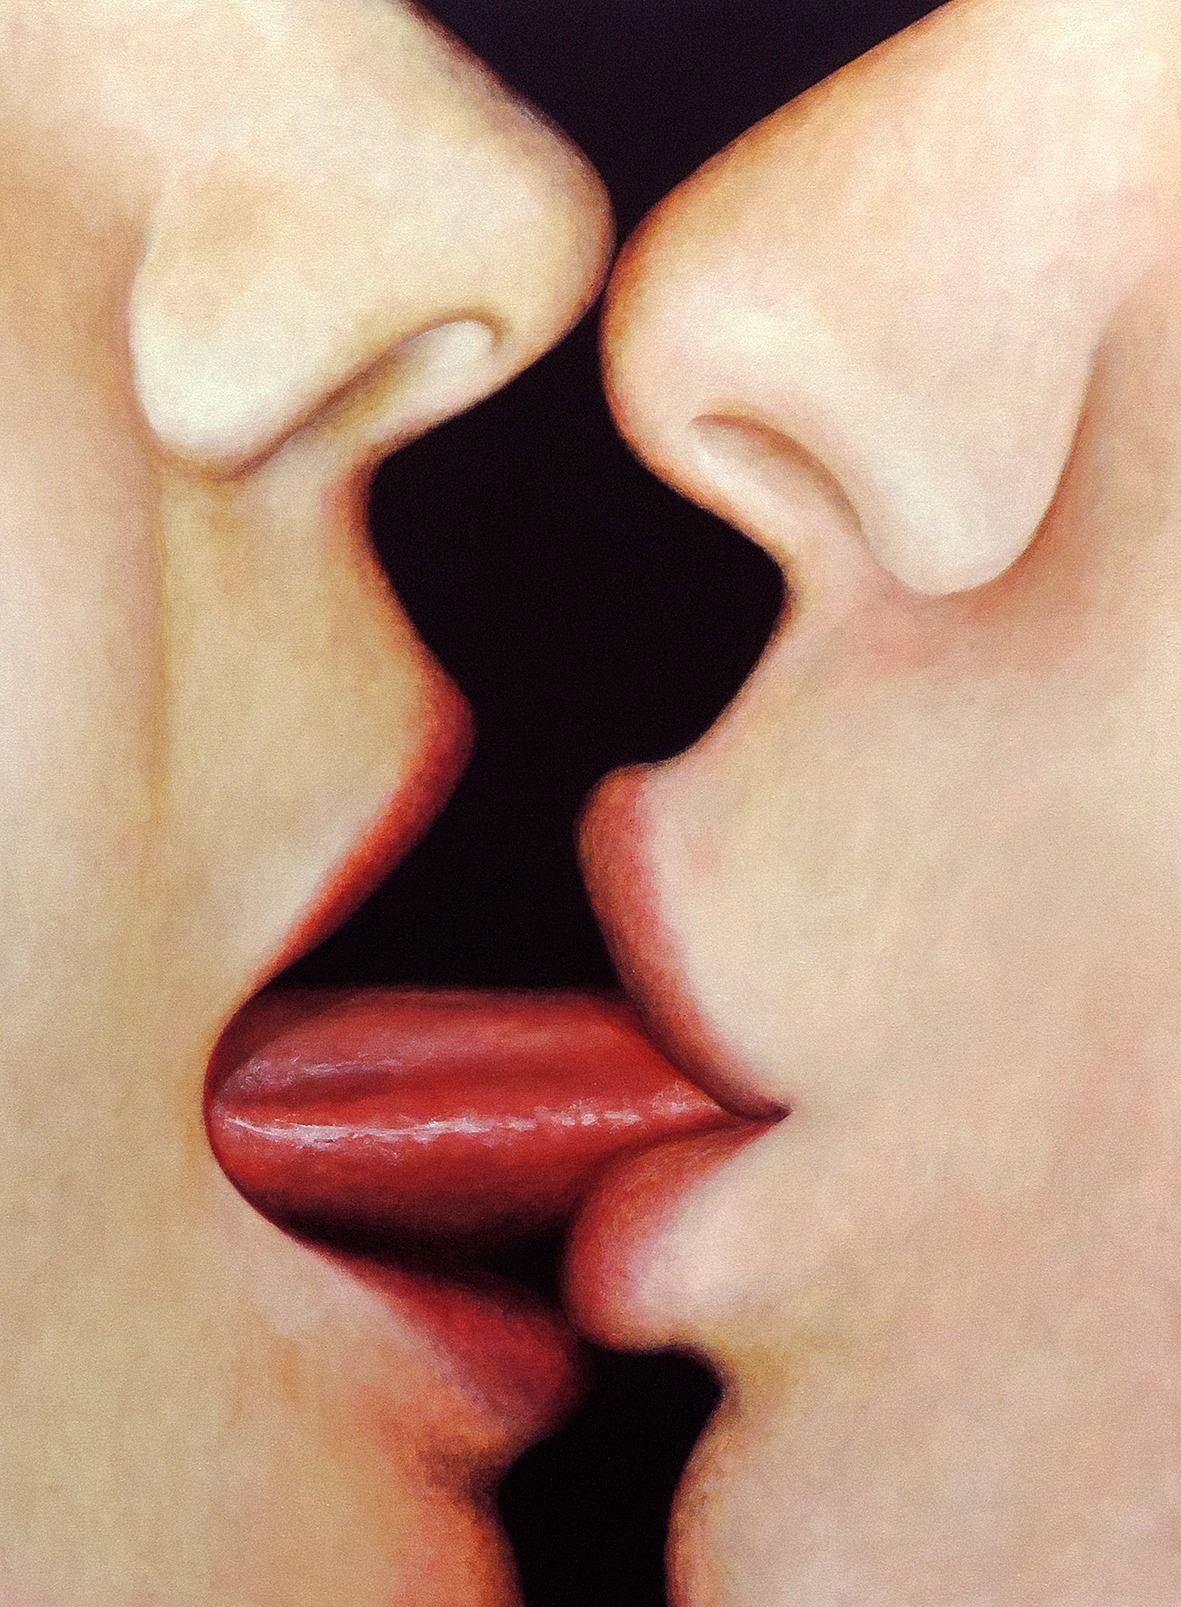 Лесбиянки поцелую нежно. Поцелуй с языком. Поцелуй в губы. Французский поцелуй. Целующие губы.